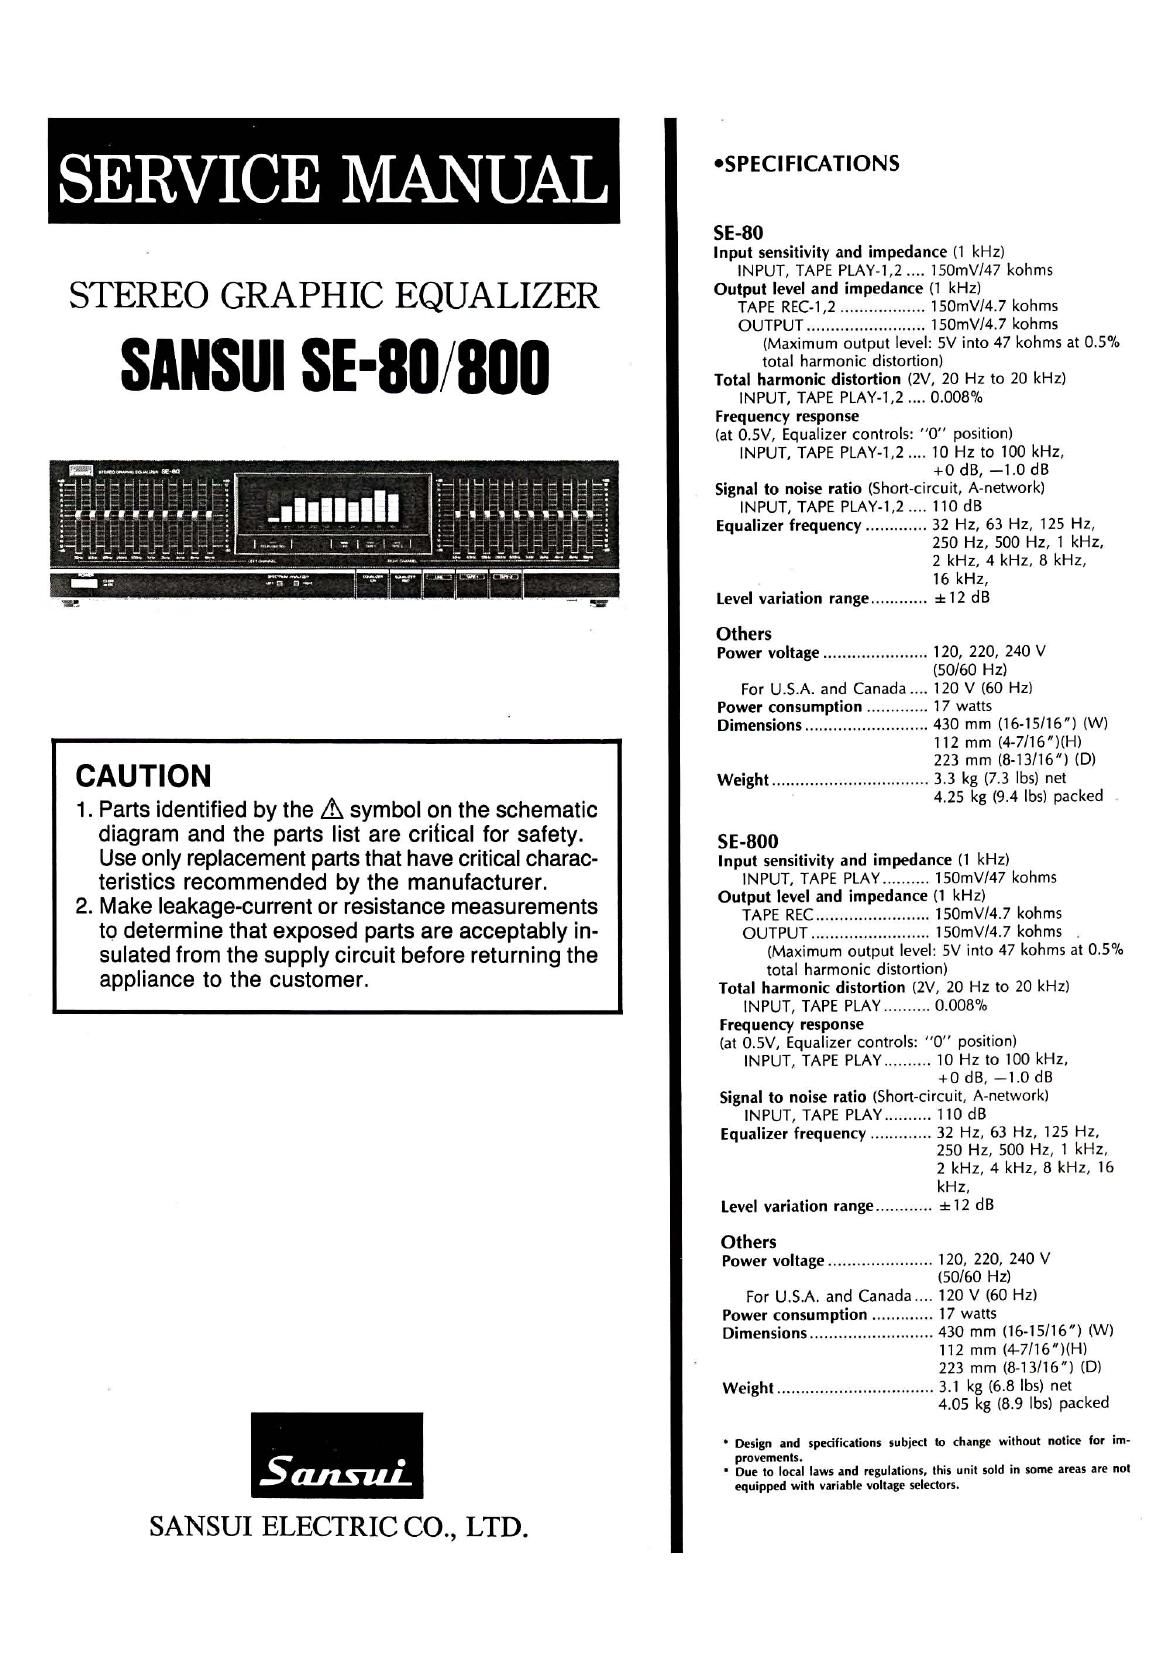 Sansui SE 800 Service Manual